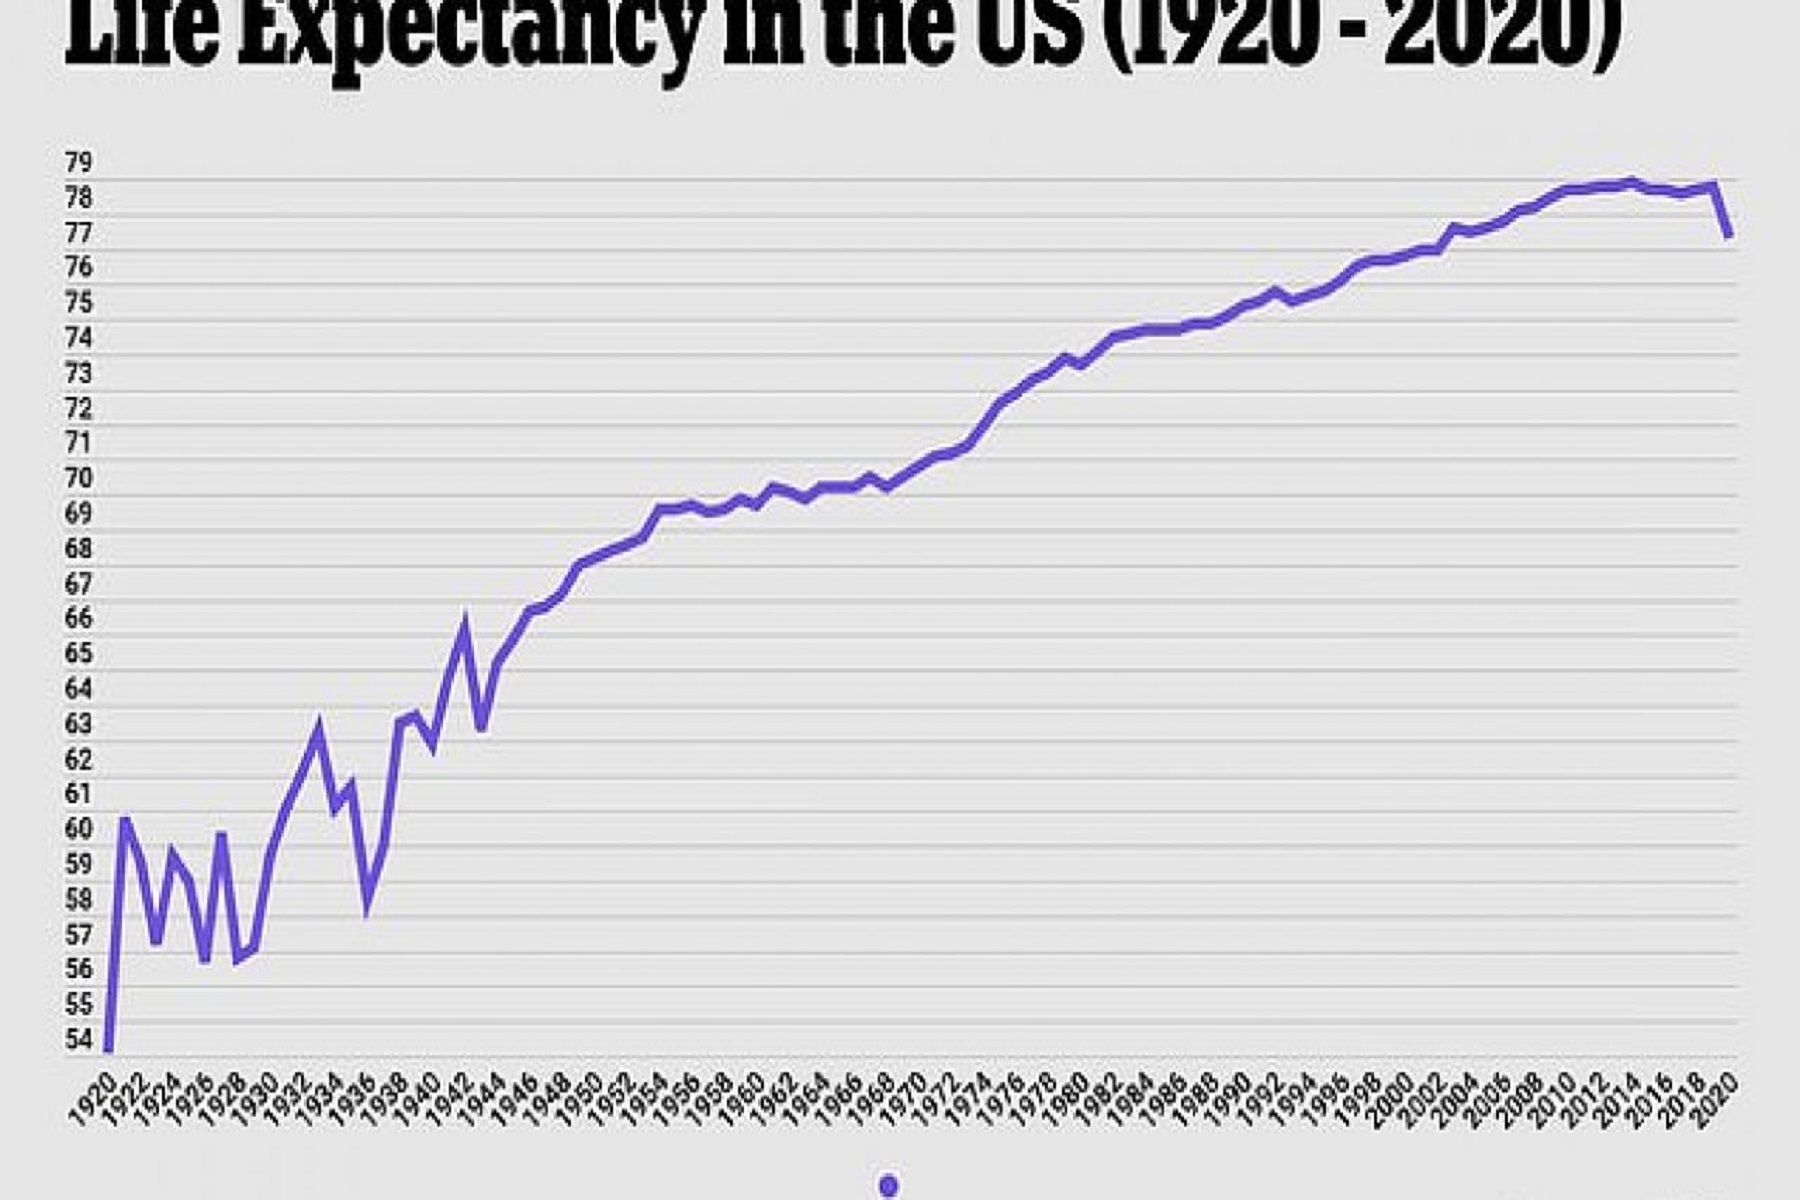 Κορωνοϊός Πανδημία: Το προσδόκιμο ζωής των ΗΠΑ το 2020 σημείωσε τη μεγαλύτερη πτώση μετά τον Β΄ Παγκόσμιο Πόλεμο